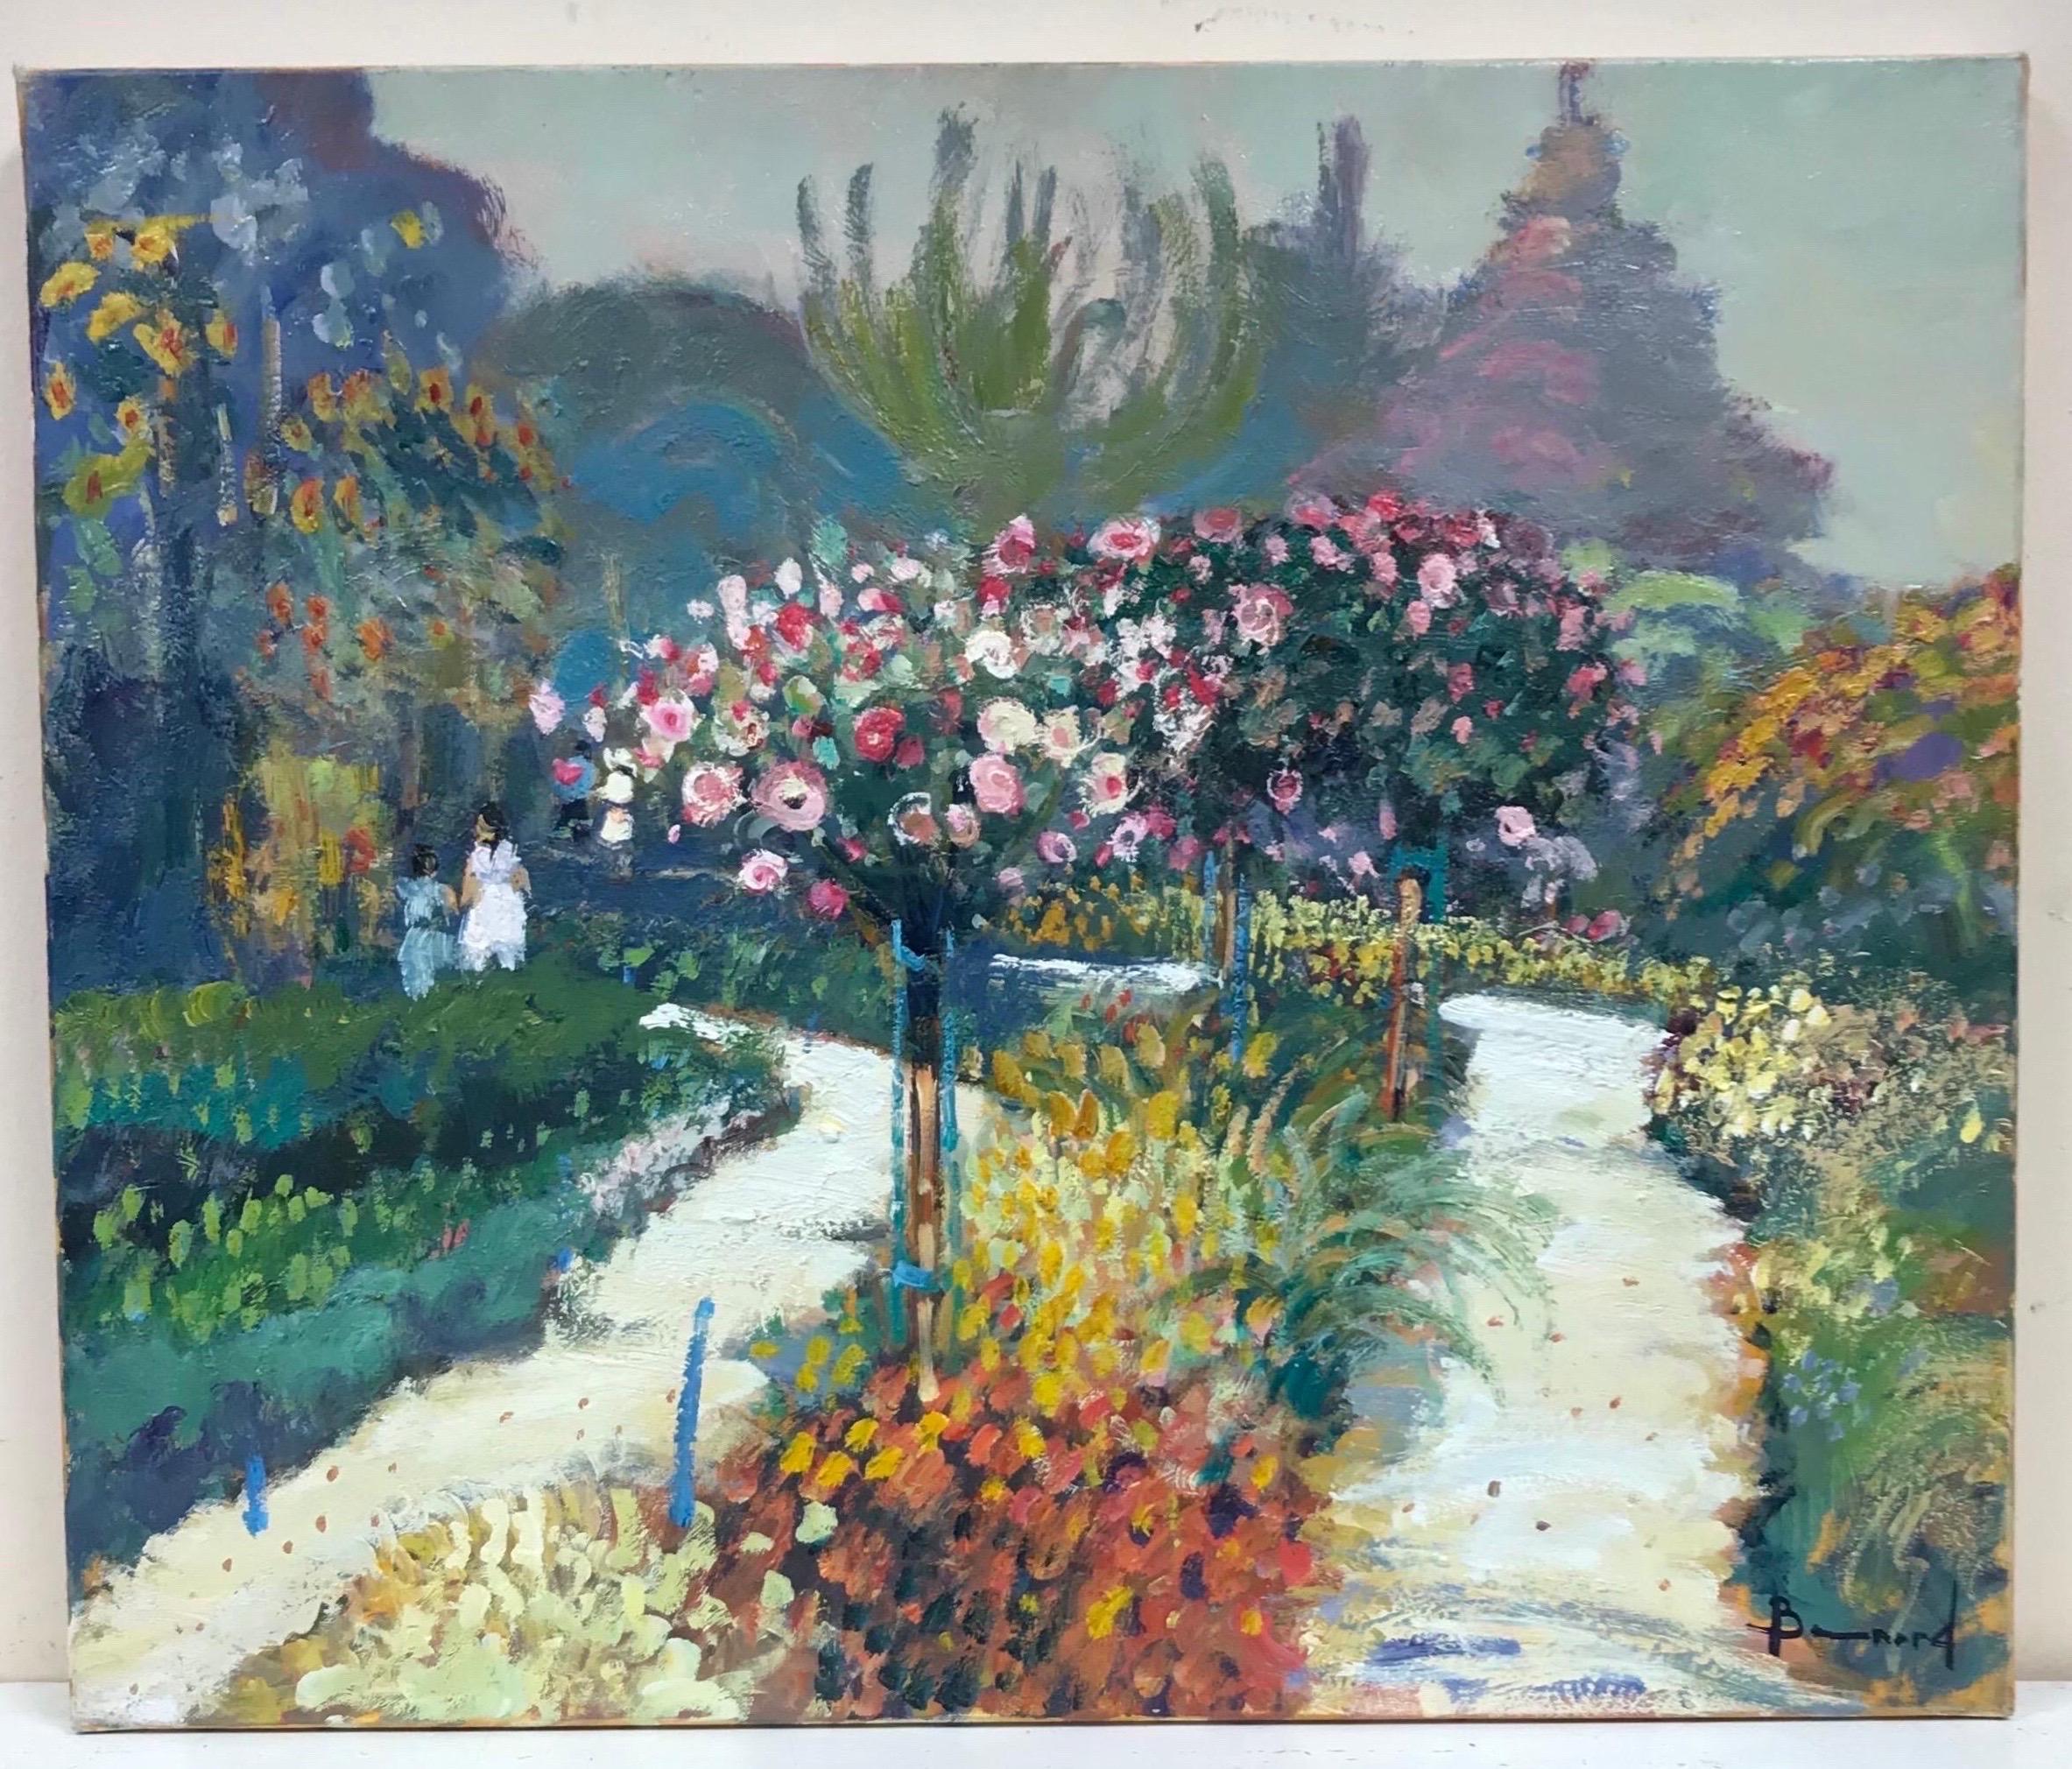 Fine huile impressionniste française signée, Mère et enfant dans une scène de jardin à fleurs - Painting de Guy Benard